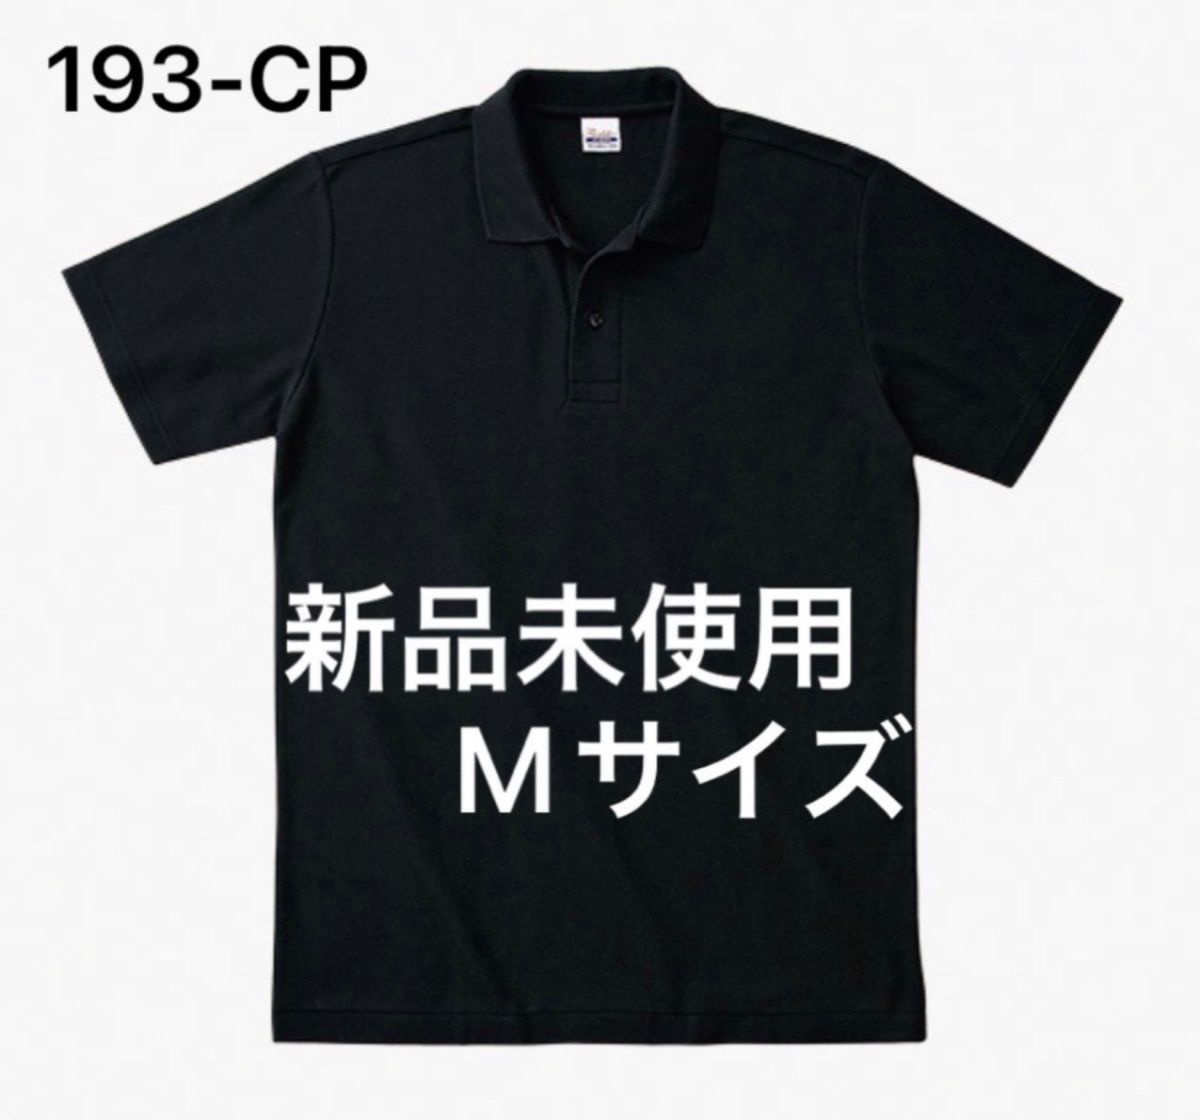 ポロシャツ 鹿の子 半袖 printstar【193-CP】M ブラック【67】